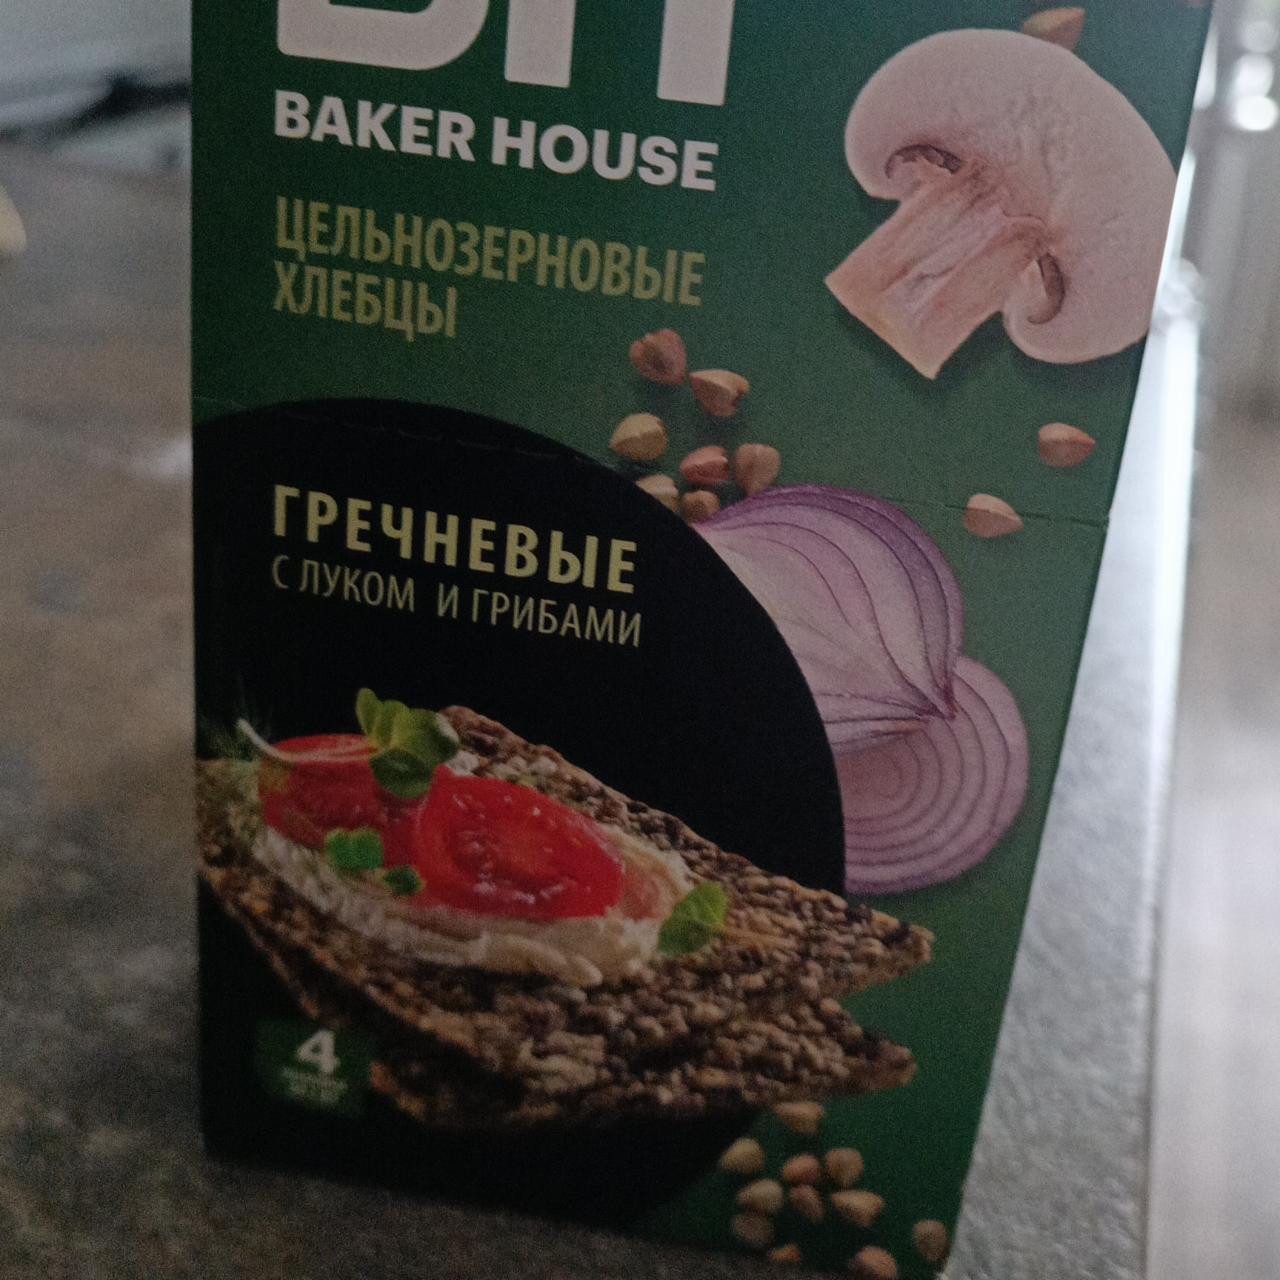 Фото - Цельнозерновые хлебцы гречневые с луком и грибами Baker House